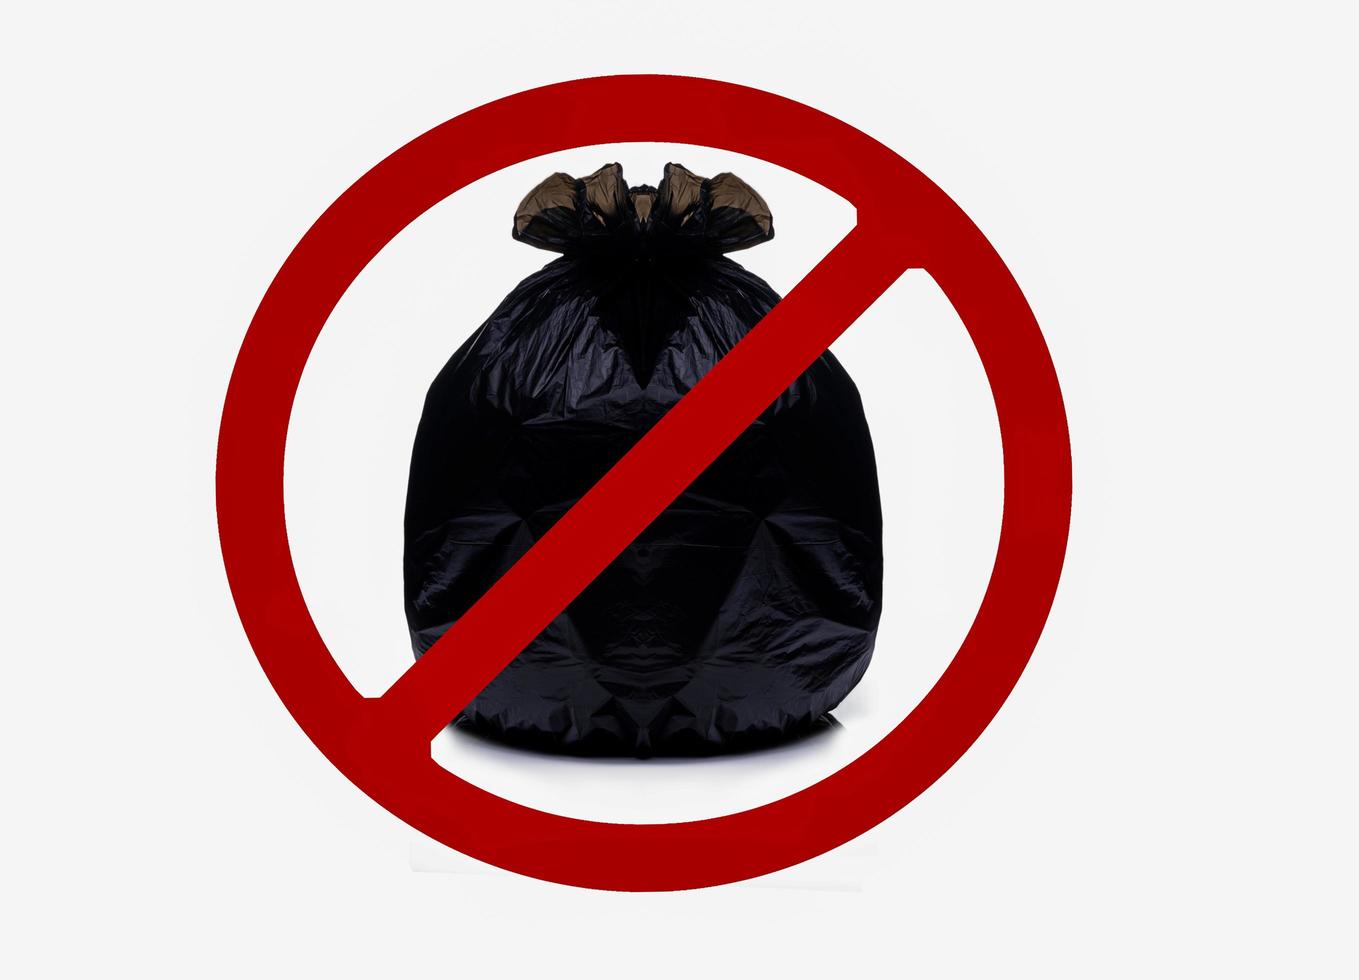 zwarte plastic zak bevat vol afval en bind de zak vast met een rood verboden bord. geen afval in dit gebied teken geïsoleerd op een witte achtergrond. zwarte plastic vuilniszak met gooi geen vuilnis hier bord. foto